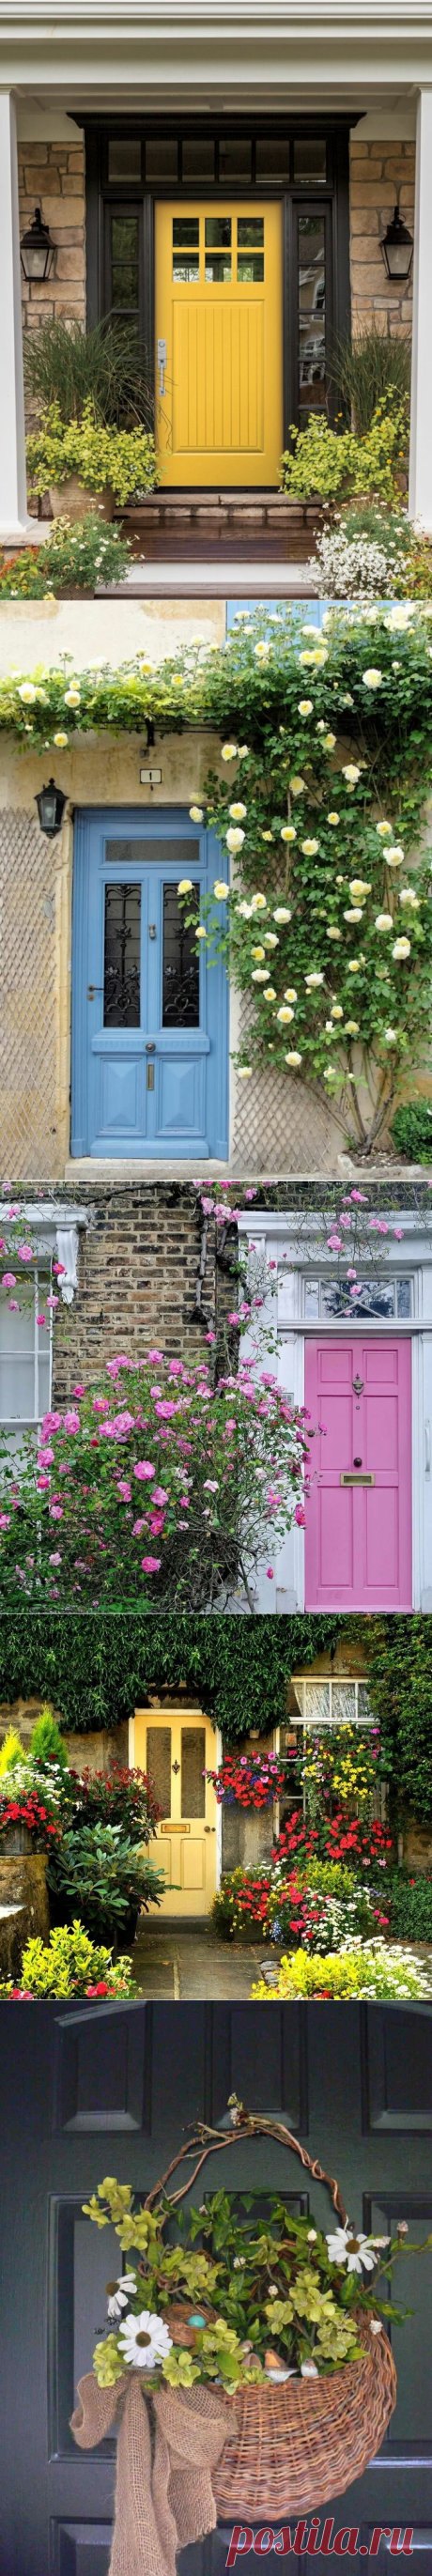 Как украсить двери на даче и террасу своими руками - 18 фото | Фабрика Дверей | Яндекс Дзен